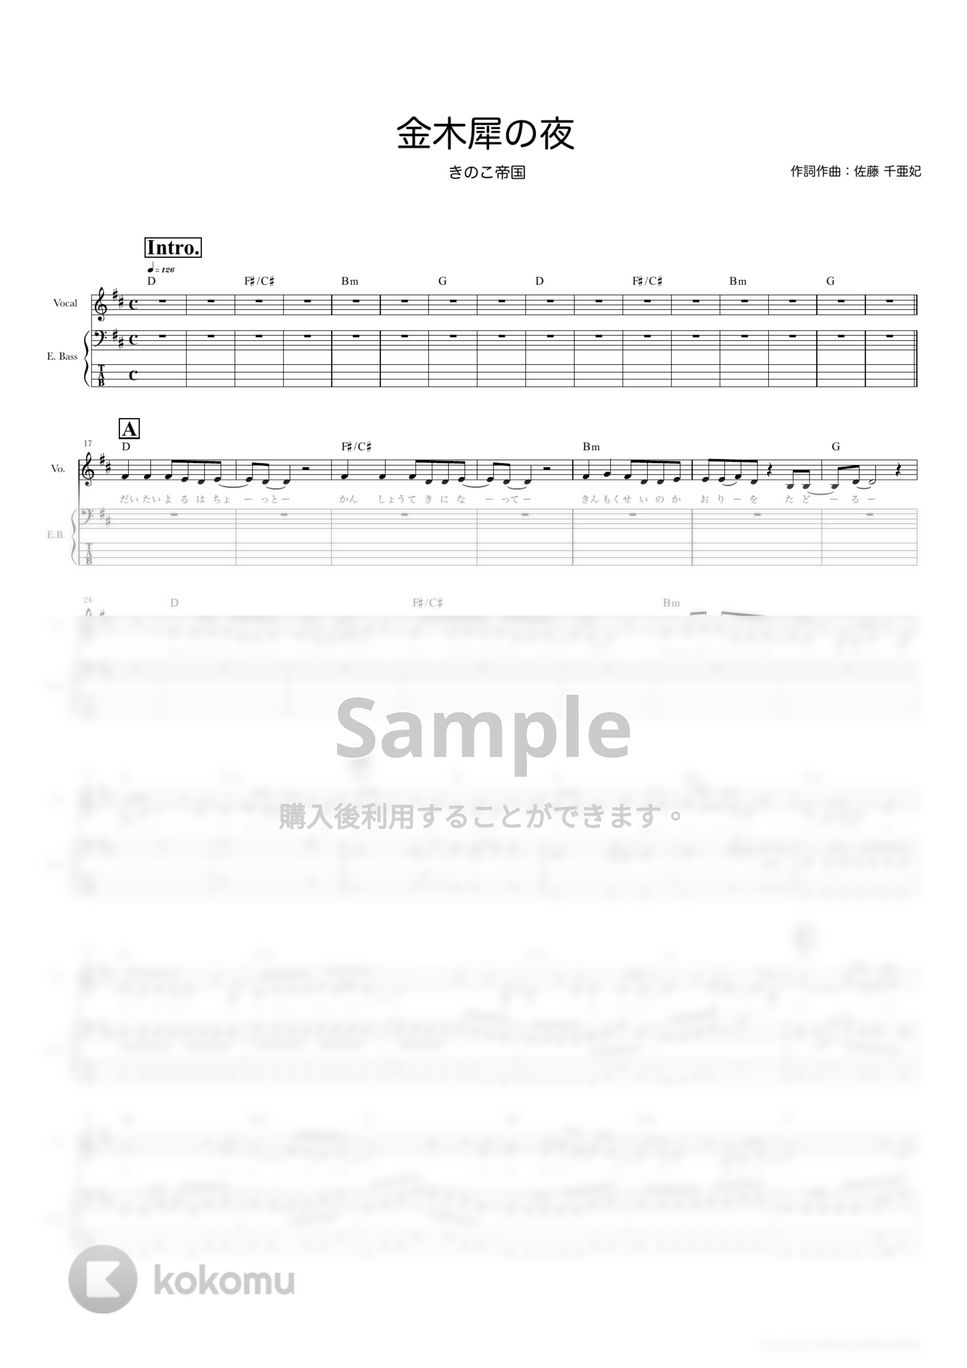 きのこ帝国 - 金木犀の夜 (ベーススコア・歌詞・コード付き) by TRIAD GUITAR SCHOOL